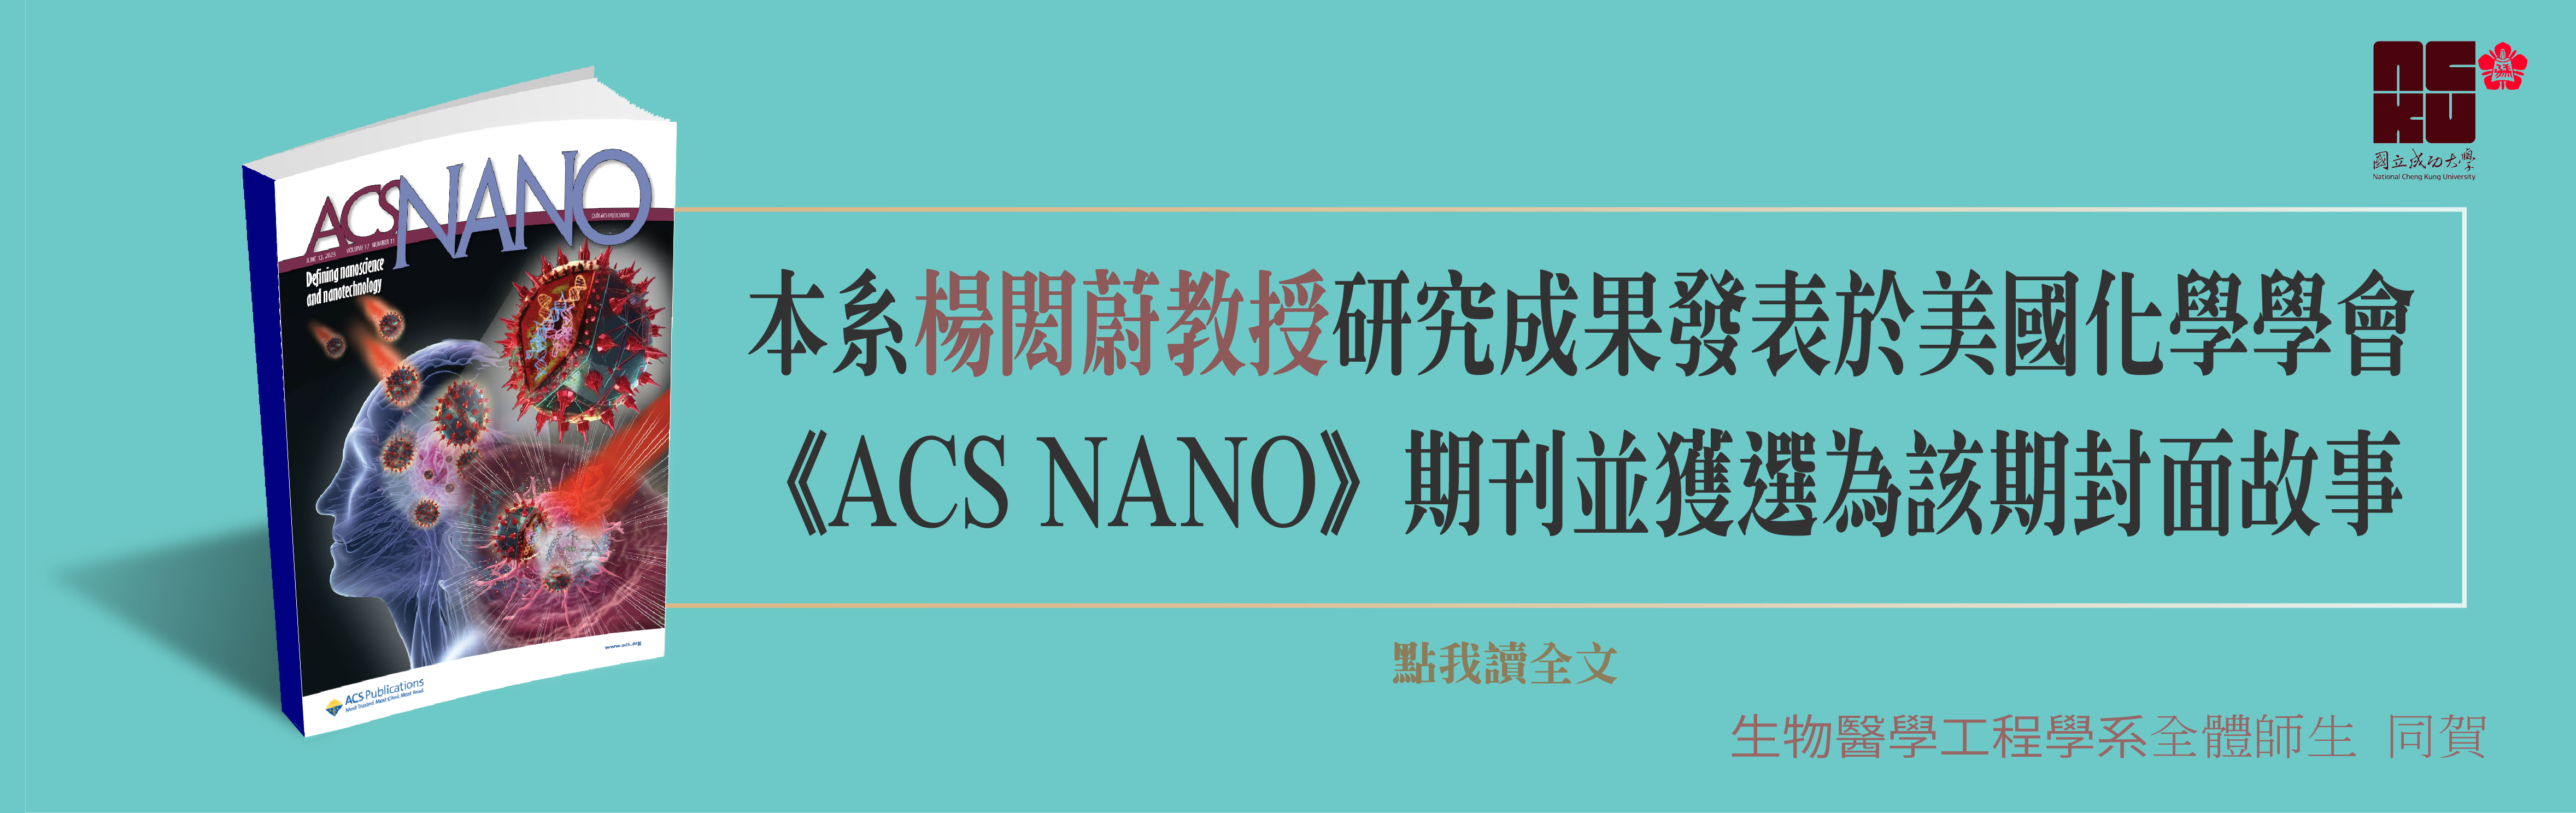 楊閎蔚教授研究團隊登上ACS NANO期刊封面